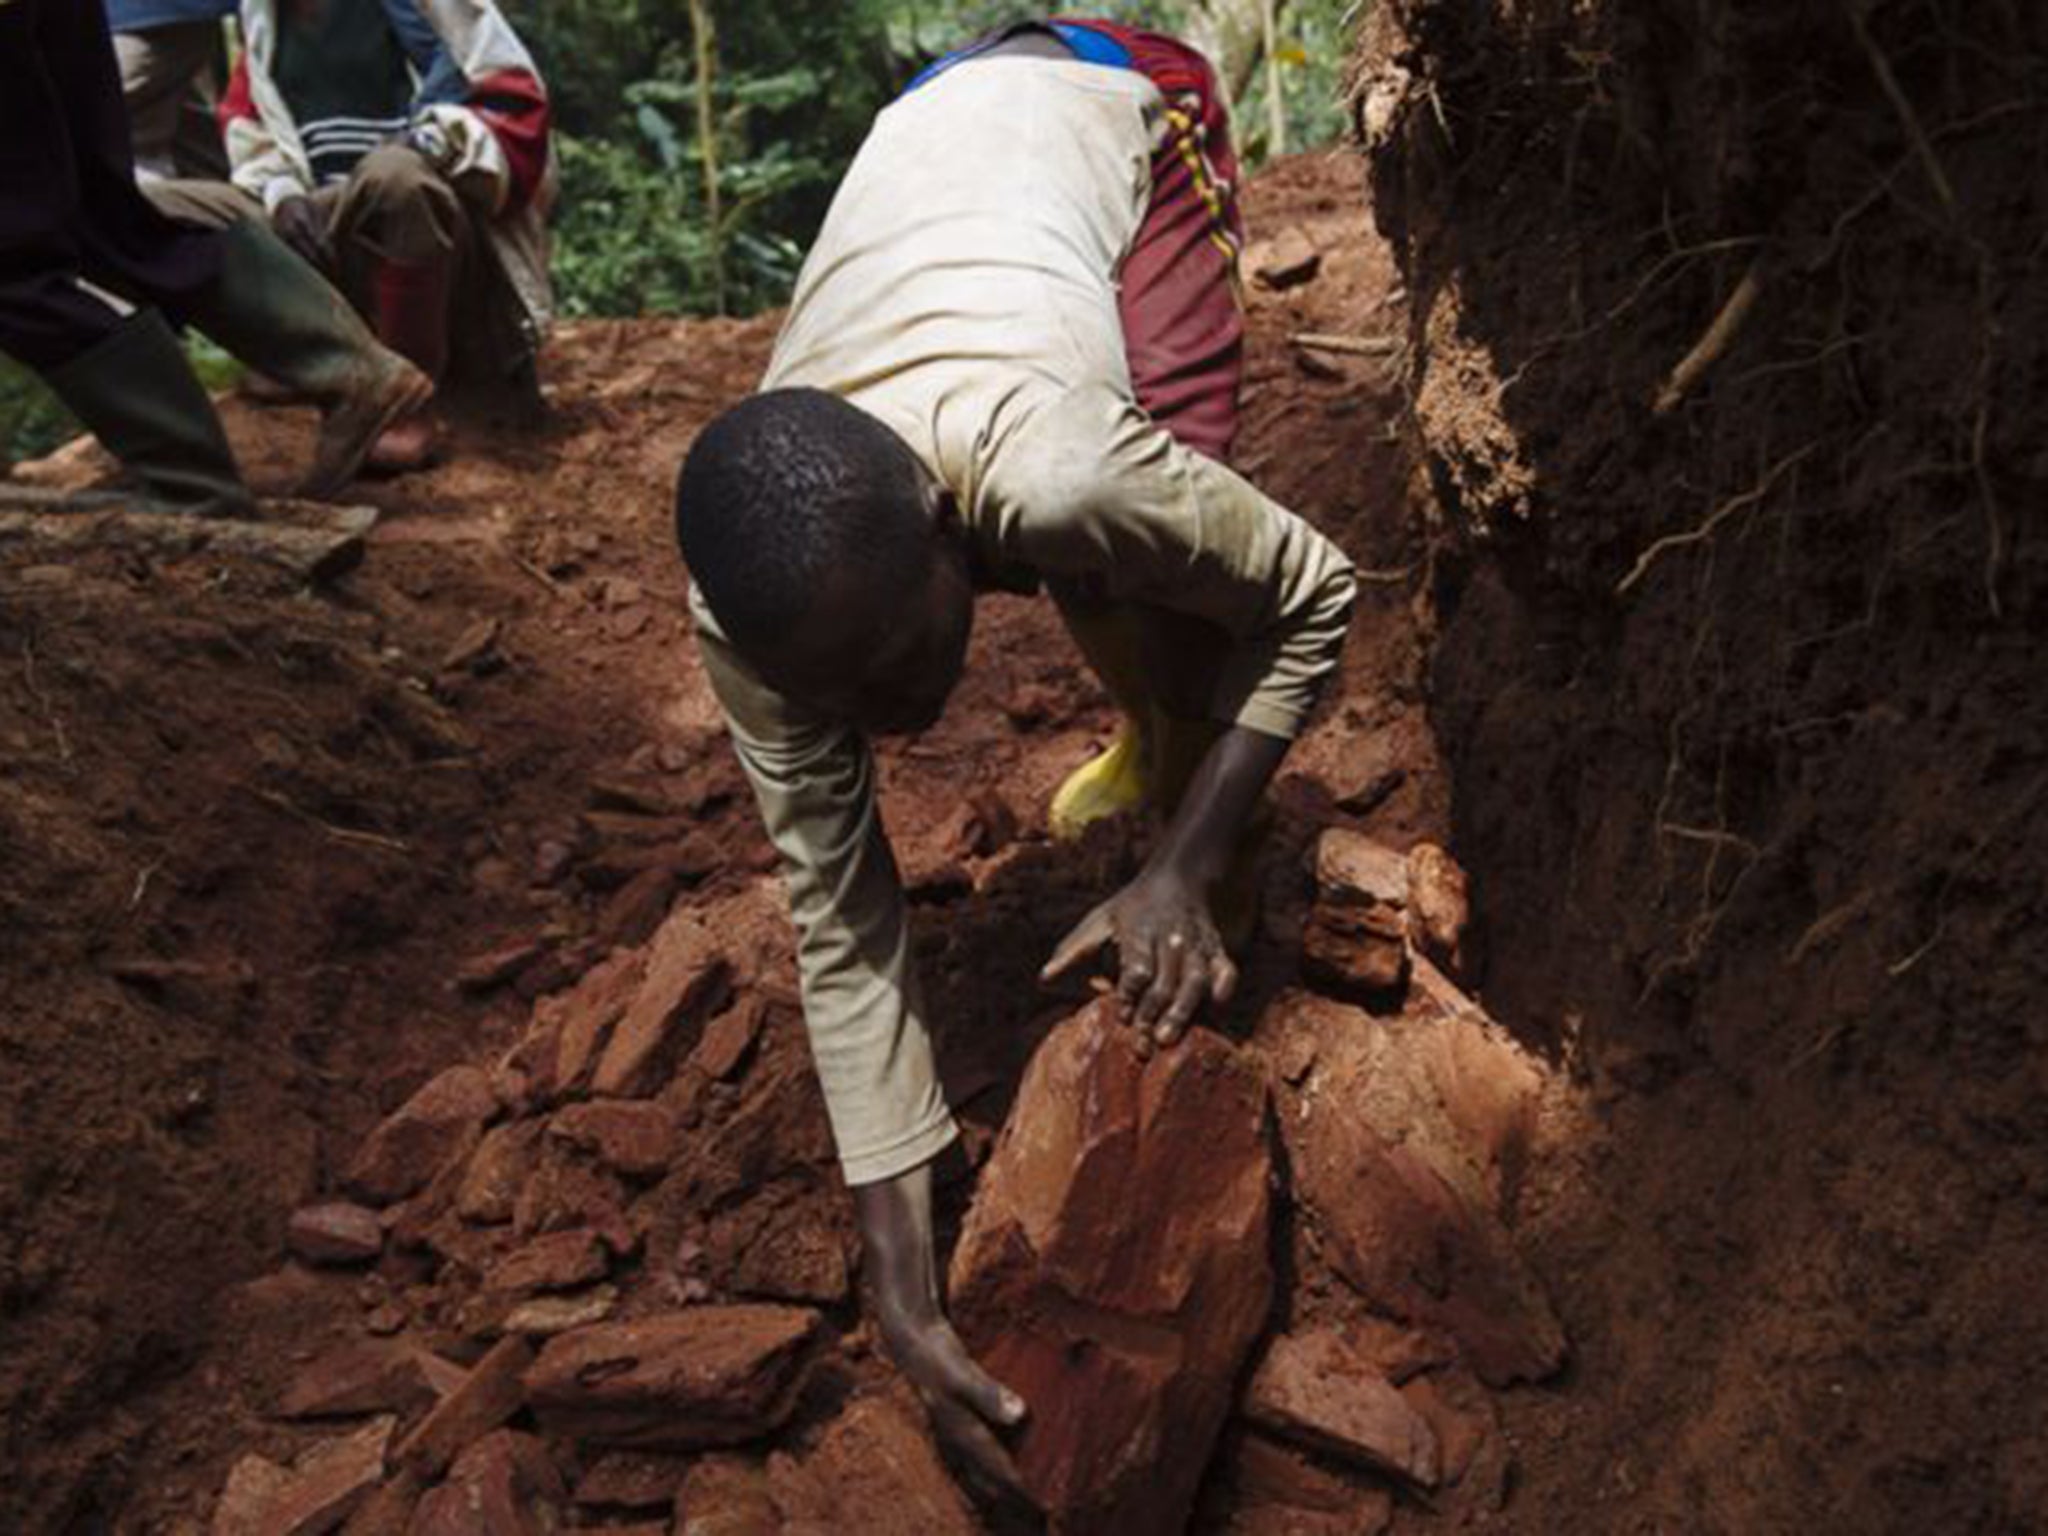 Cassiterite miners in South Kivu